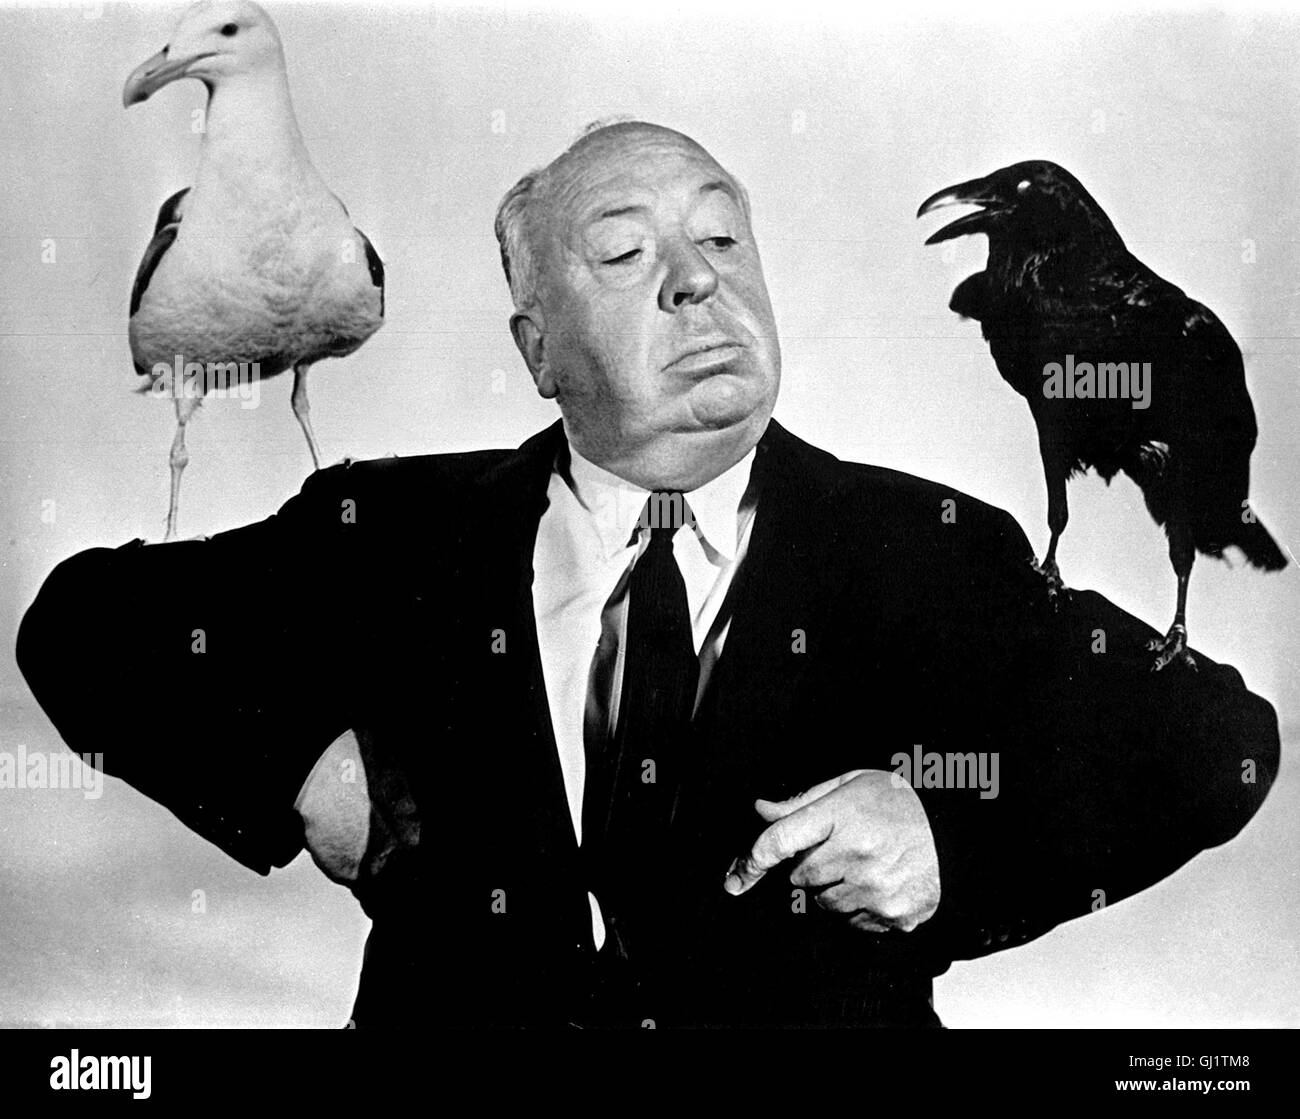 ALFRED HITCHCOCK (Bild aus dem Film 'Die Vögel') - the Master of Suspense. Film Still - Portrait with birds Regie: Tim Kirby Stock Photo